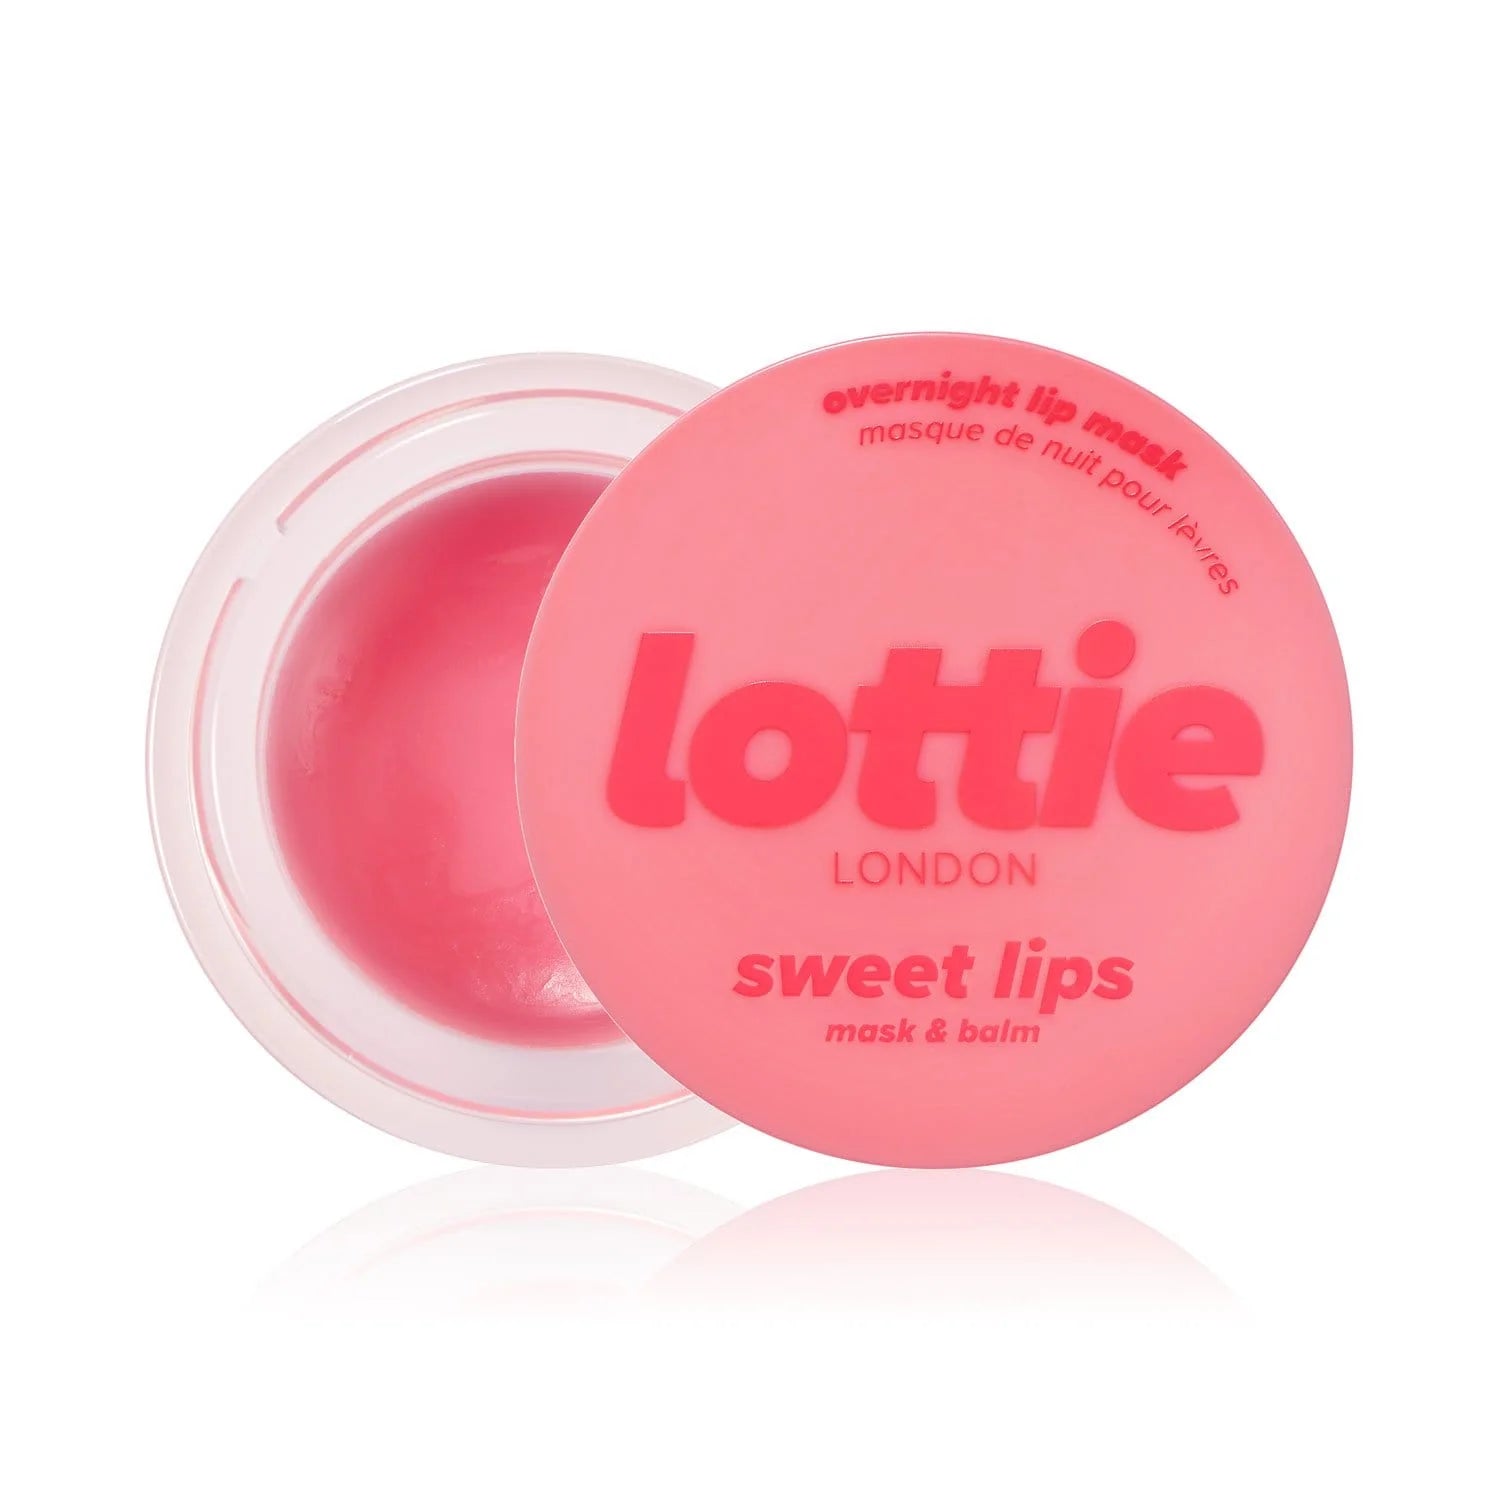 Lottie London-  Sweet lips overnight mask & balm